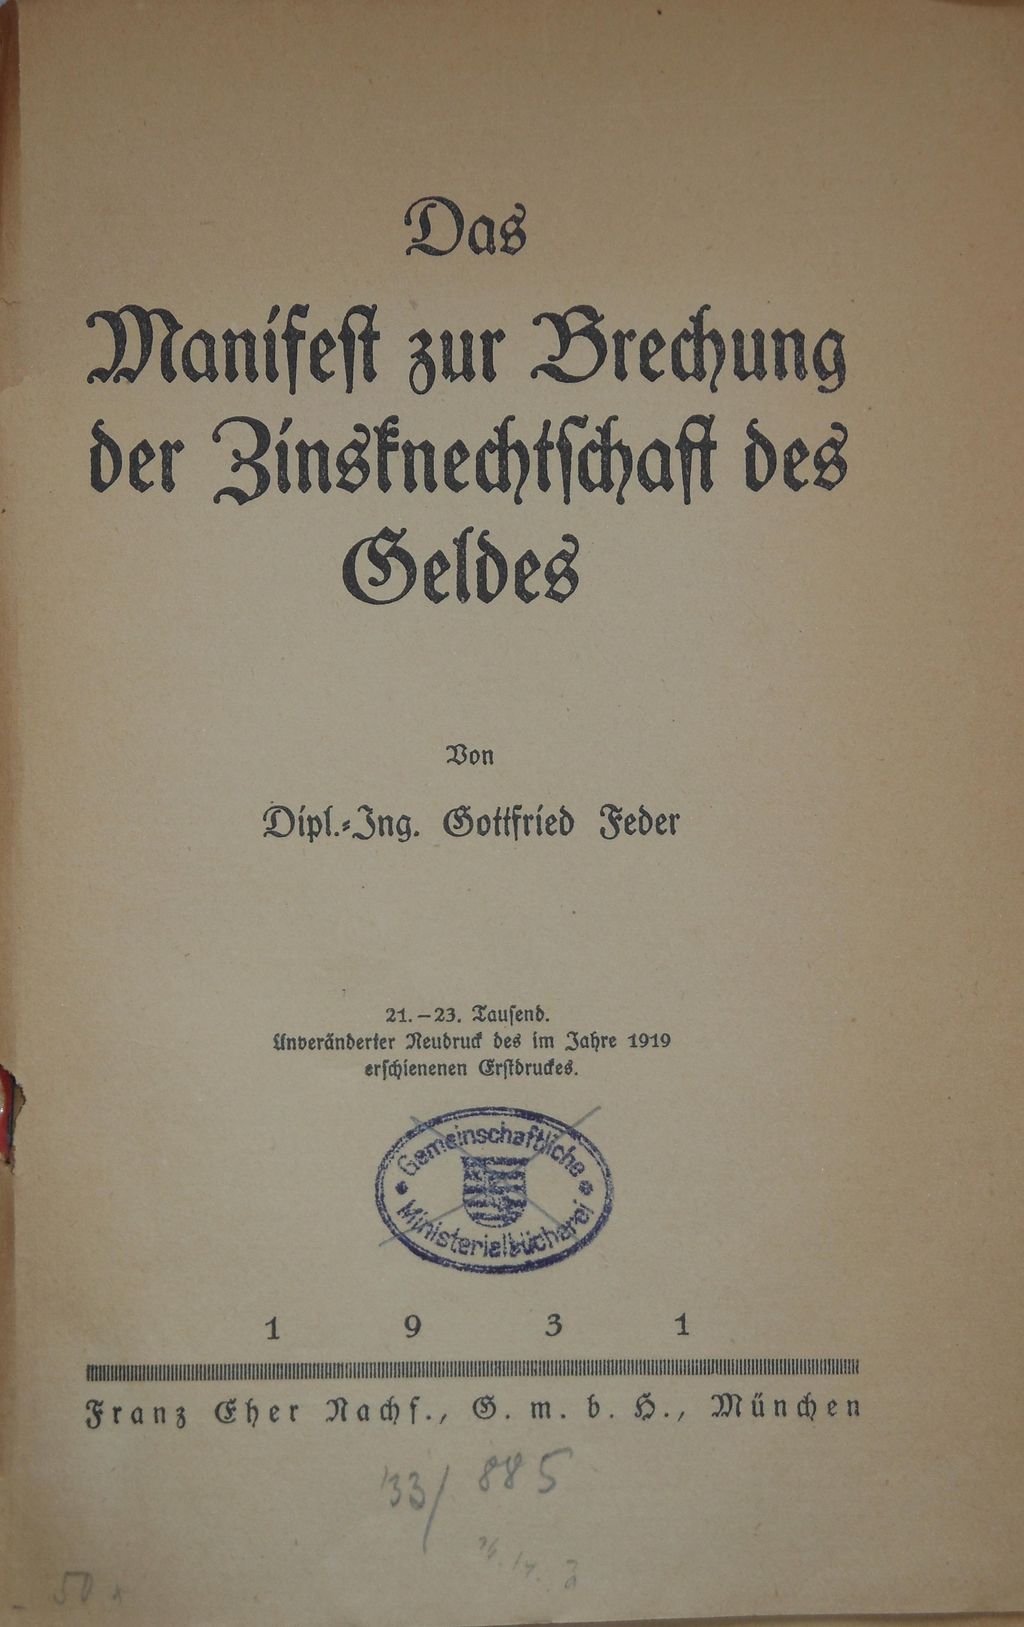 Buch: Feder, Gottfried "An Alle, Alle! Das Manifest zur Brechung der Zinsknechtschaft", 1932